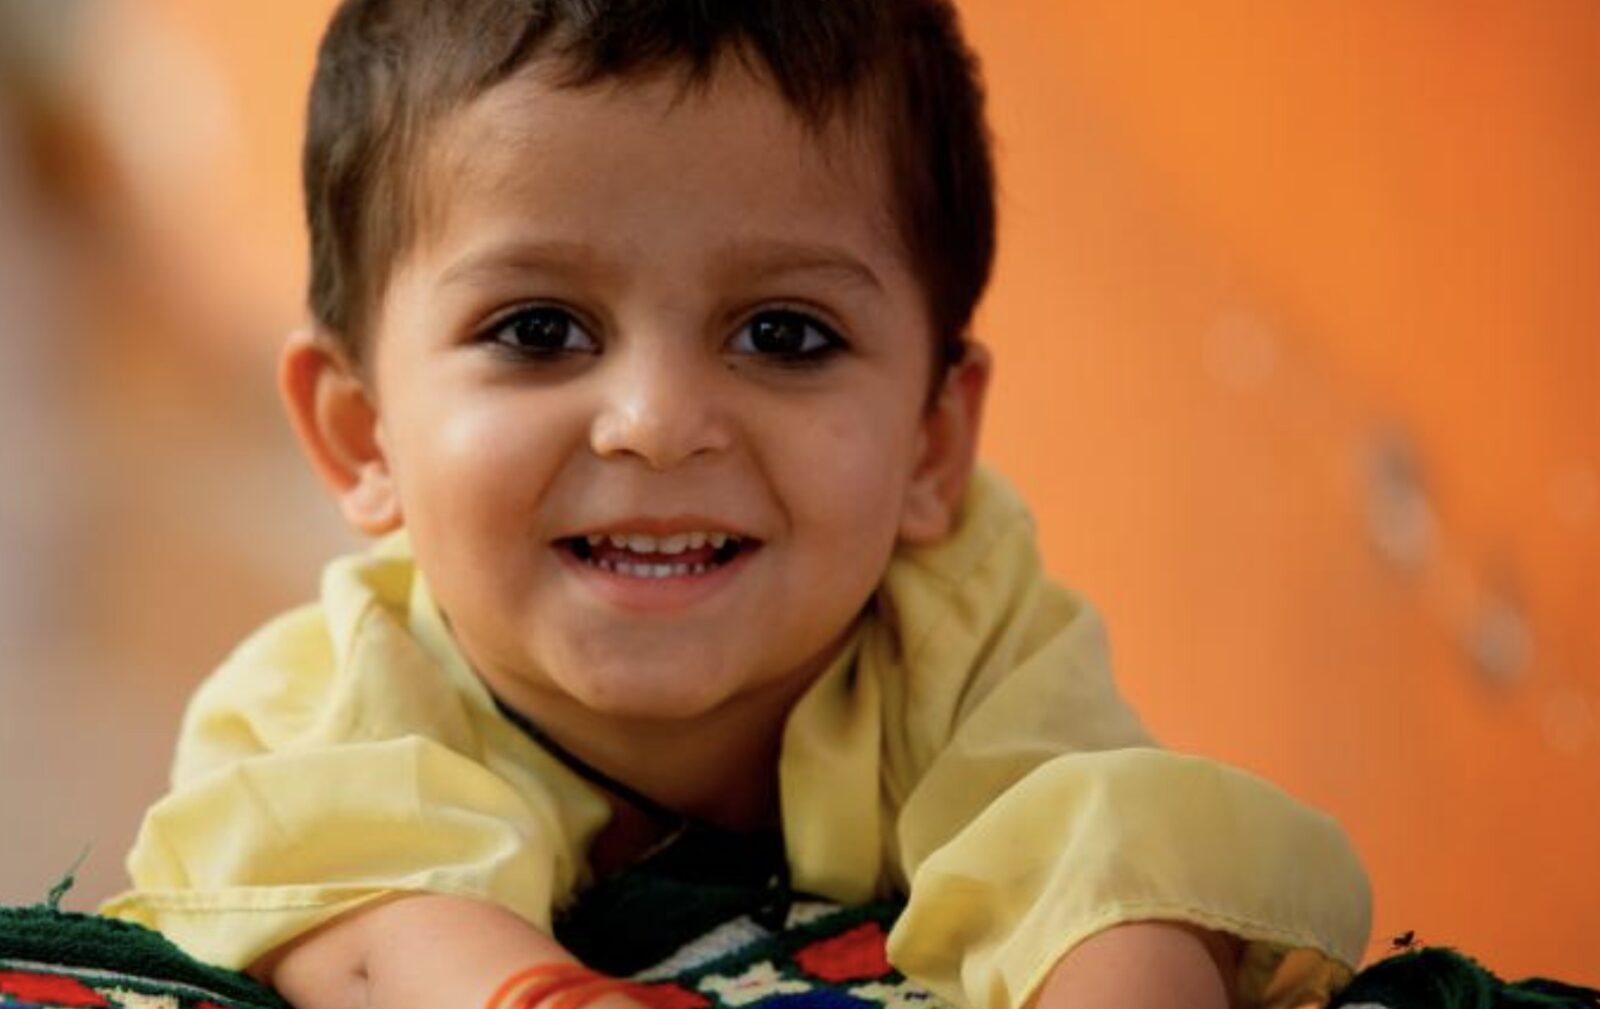 Mistillid til vacciner er voksende over hele verden og koster liv, advarer UNICEF